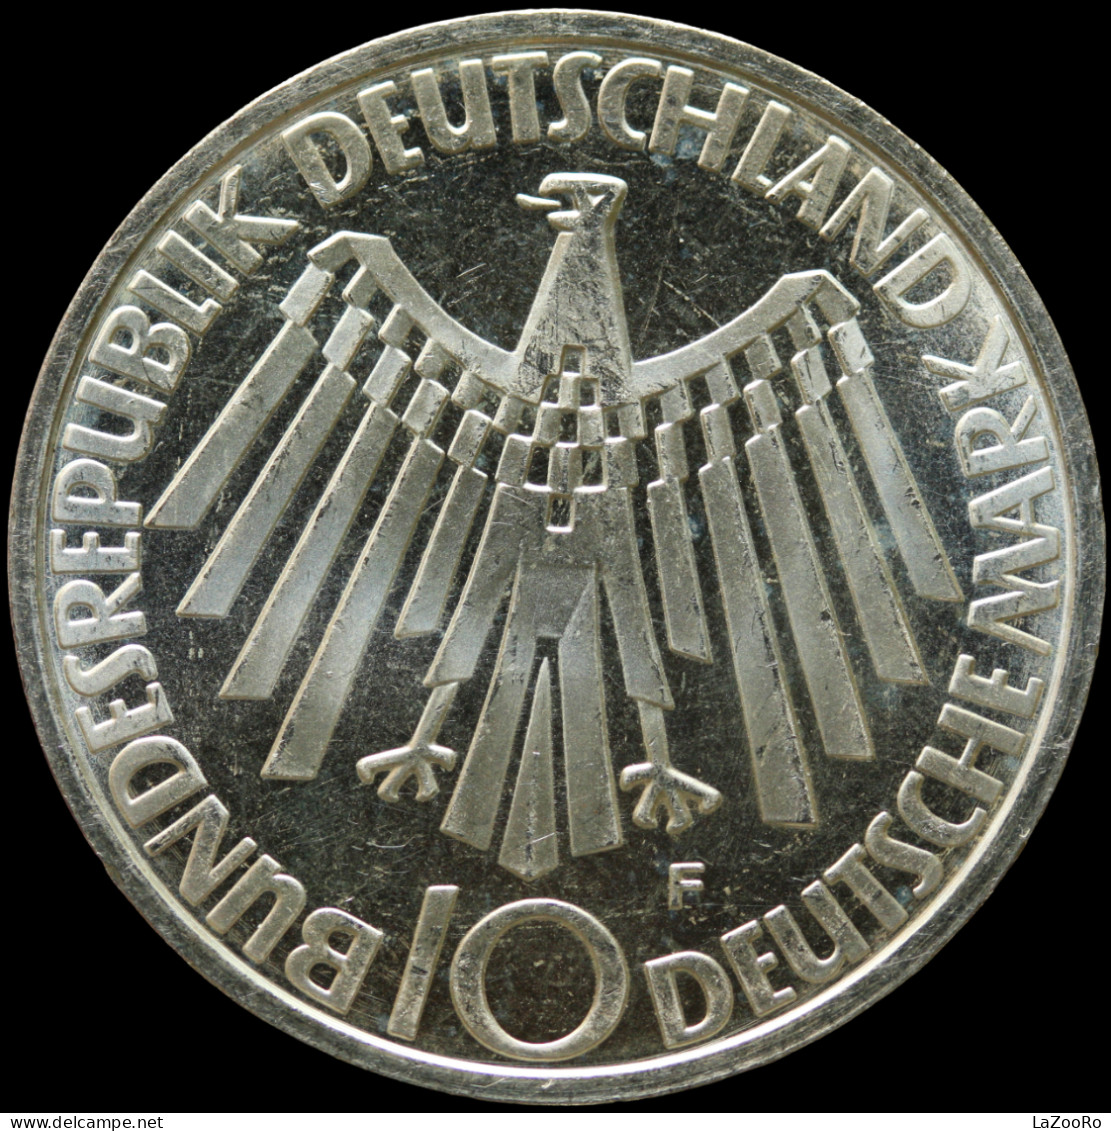 LaZooRo: Germany 10 Mark 1972 F PROOF Olympics - Silver - Commémoratives